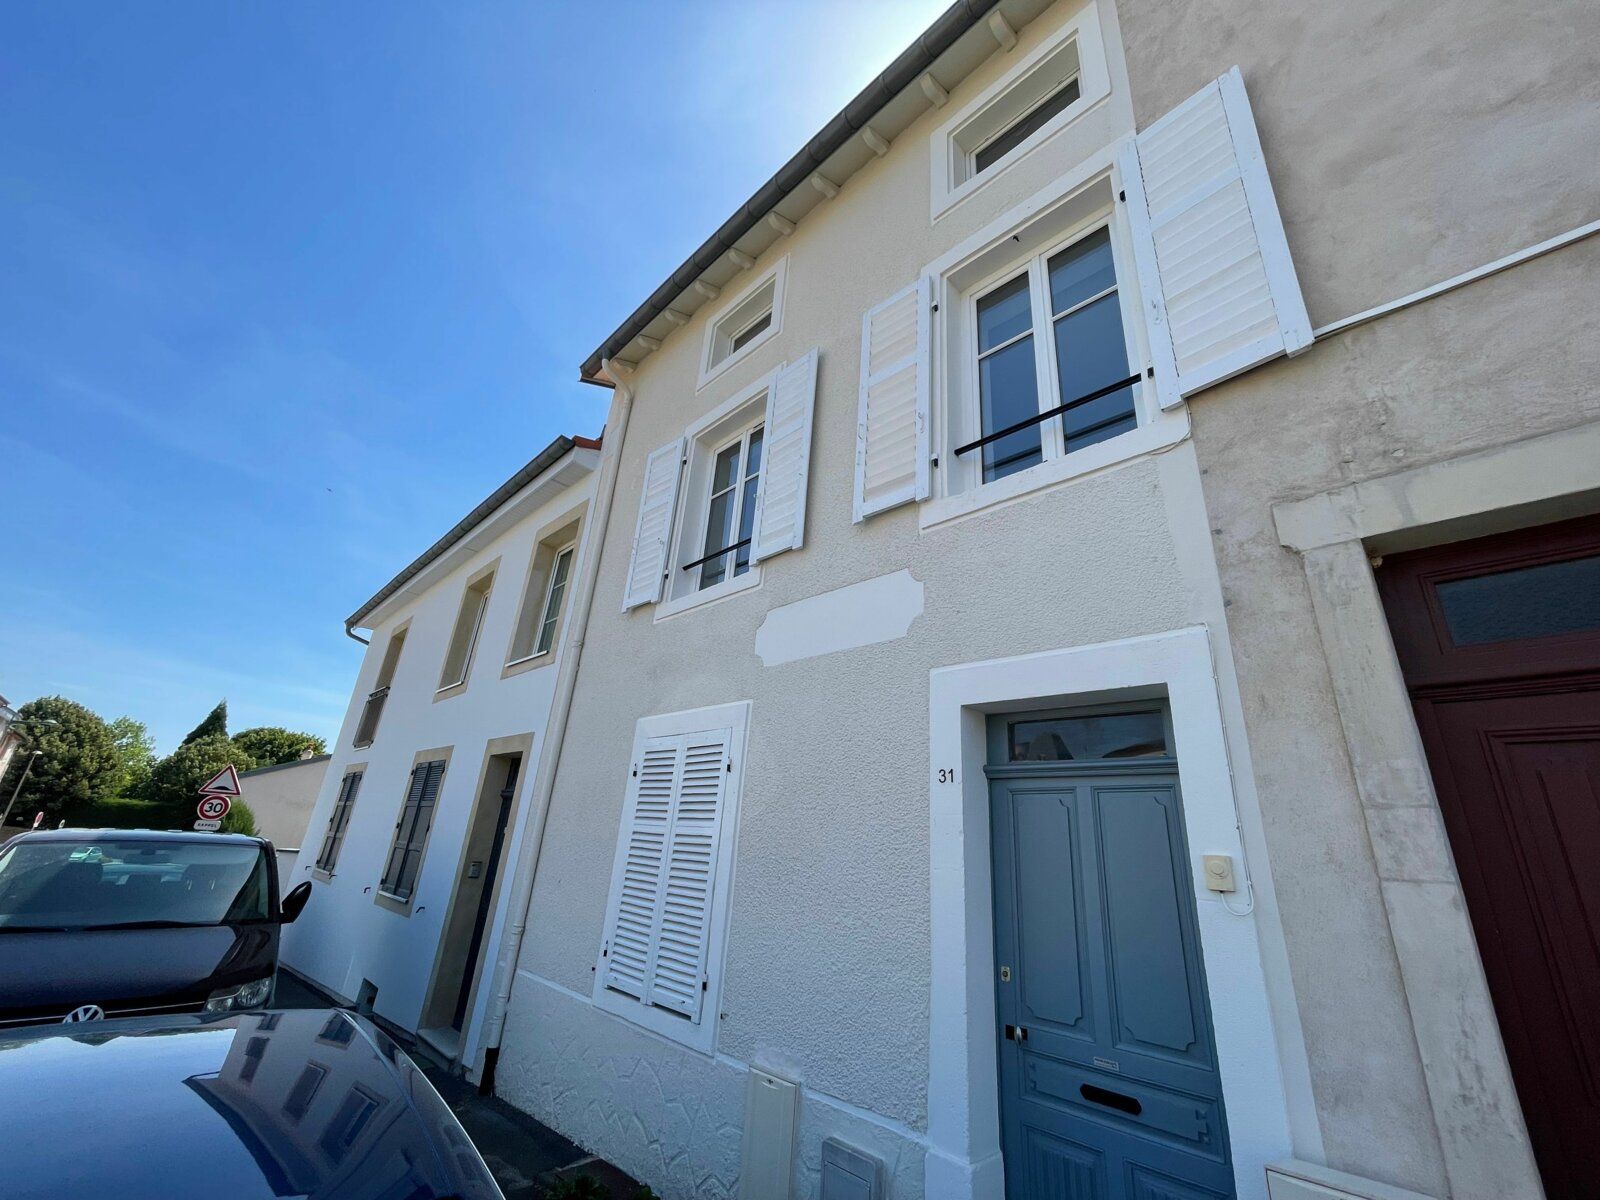 Maison à vendre 4 135m2 à Essey-lès-Nancy vignette-1